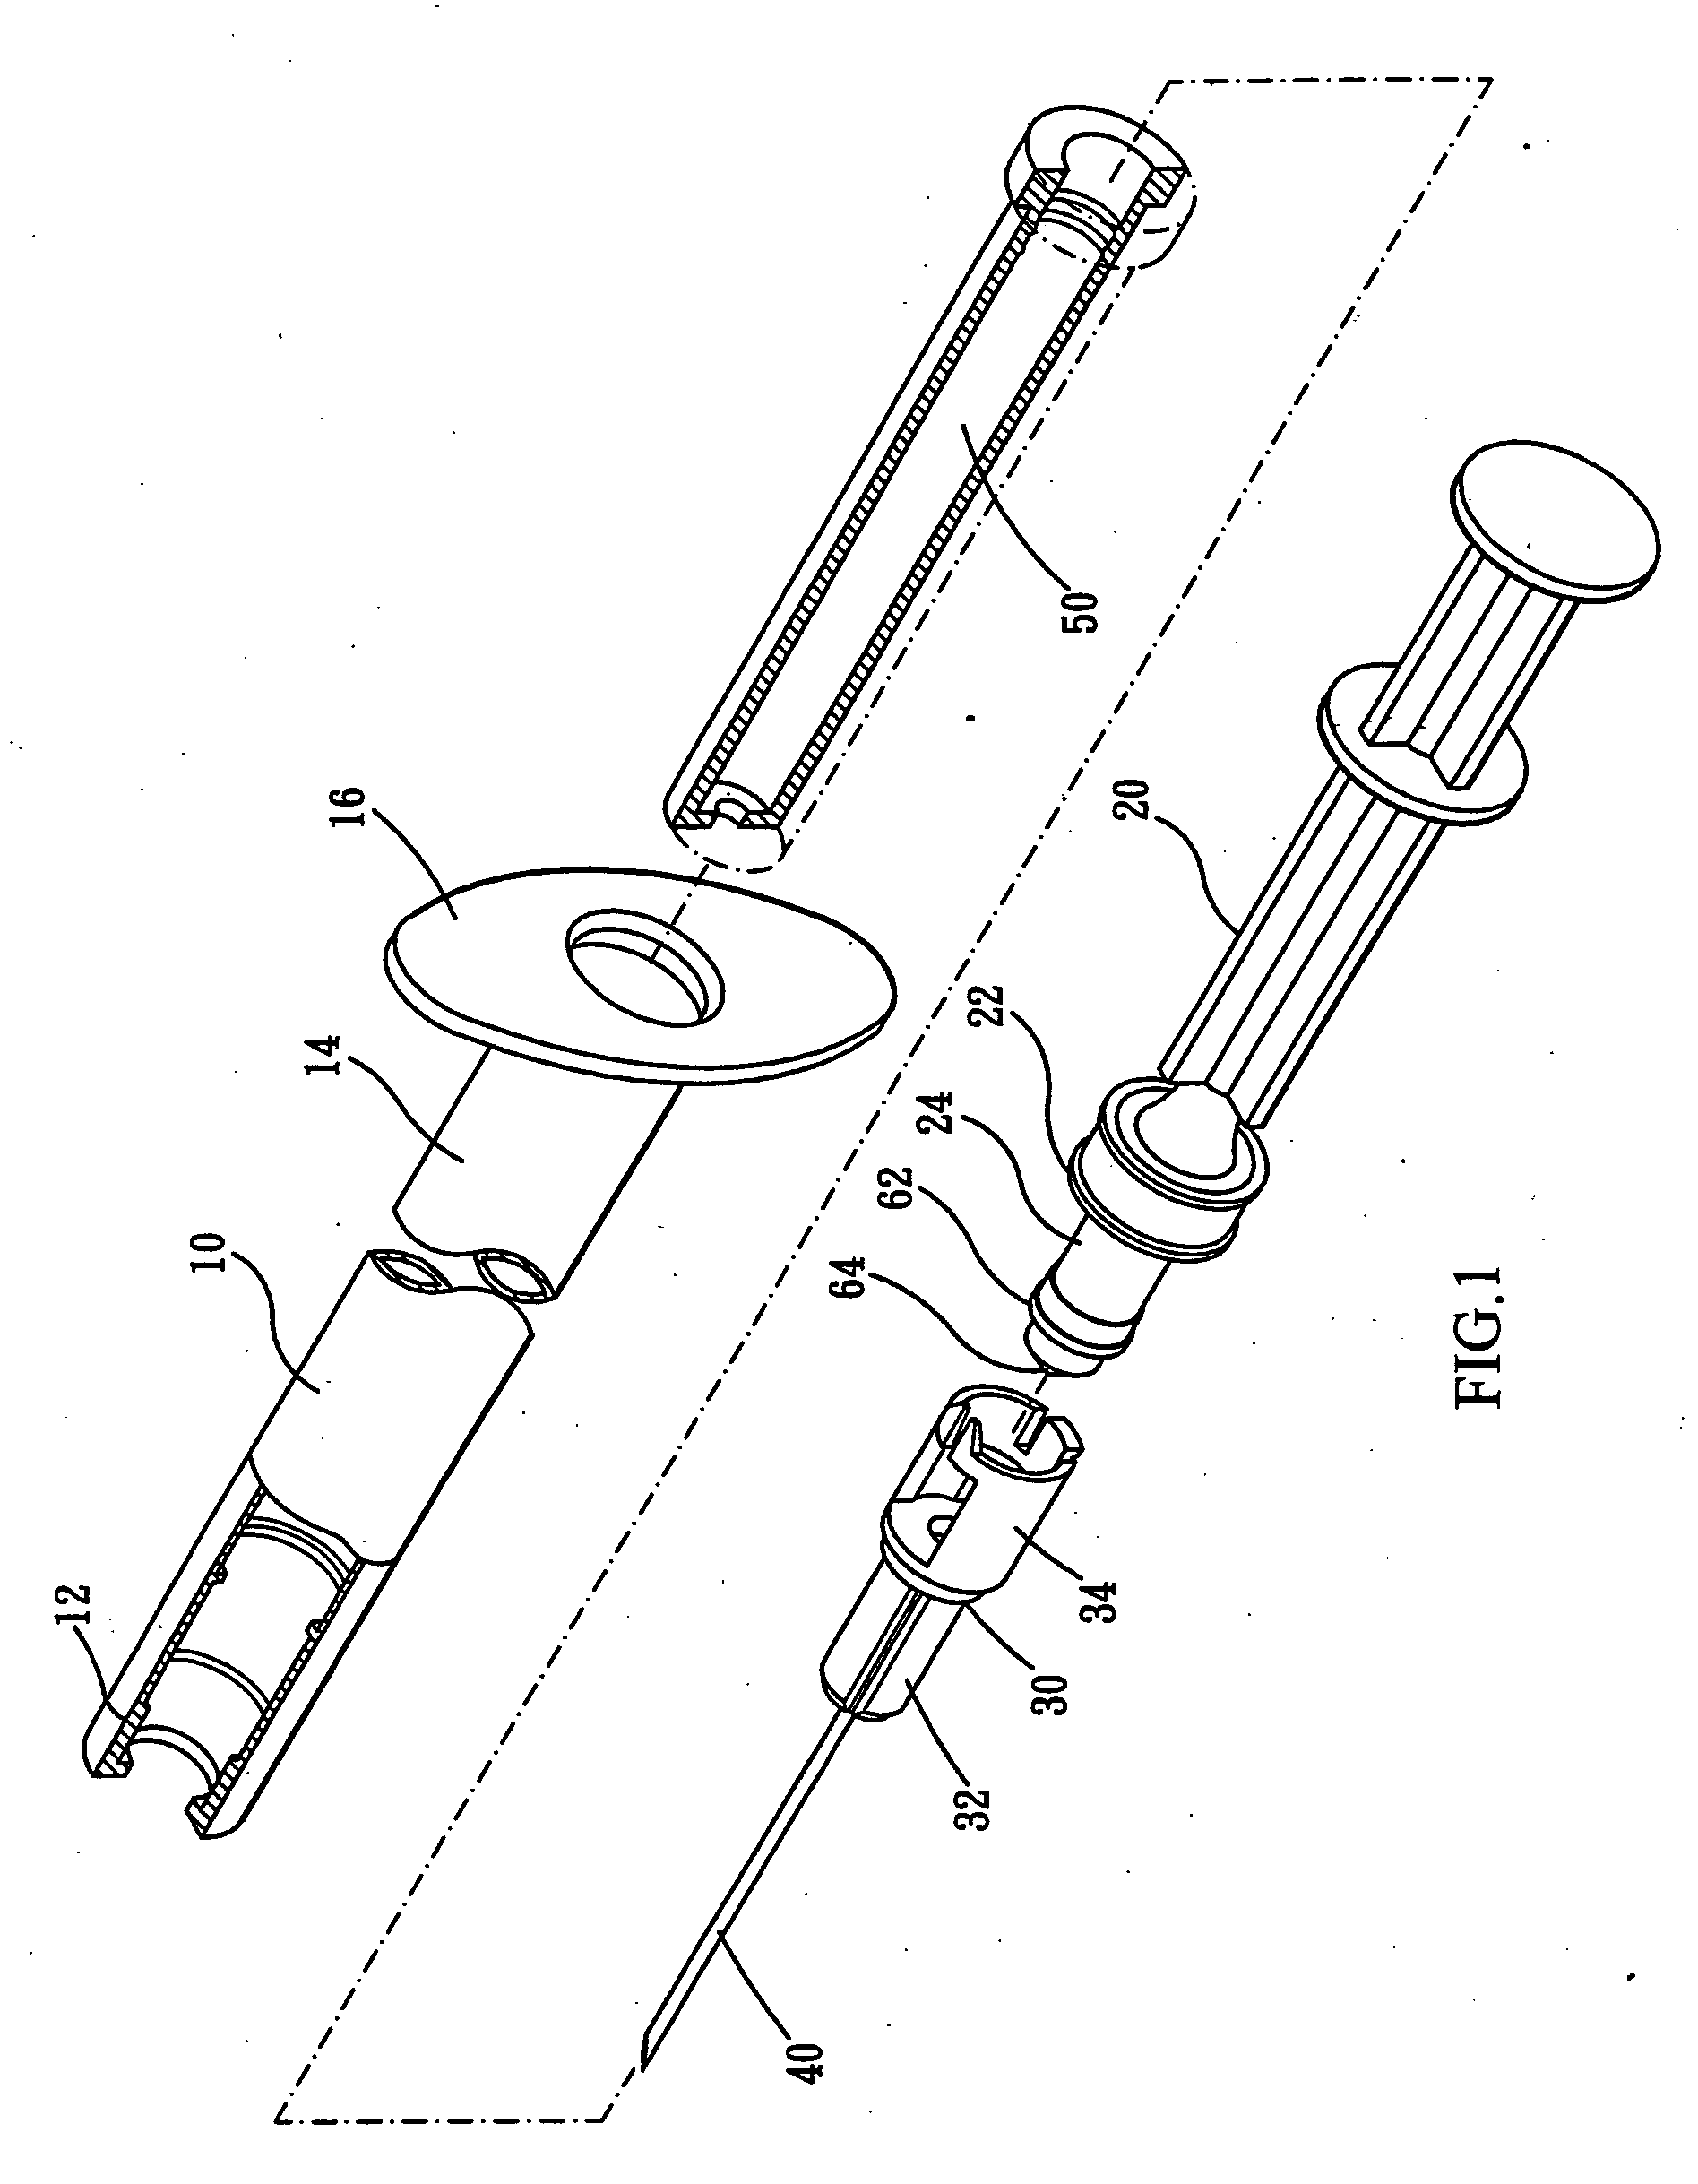 Mechanism for tilting retractable needle